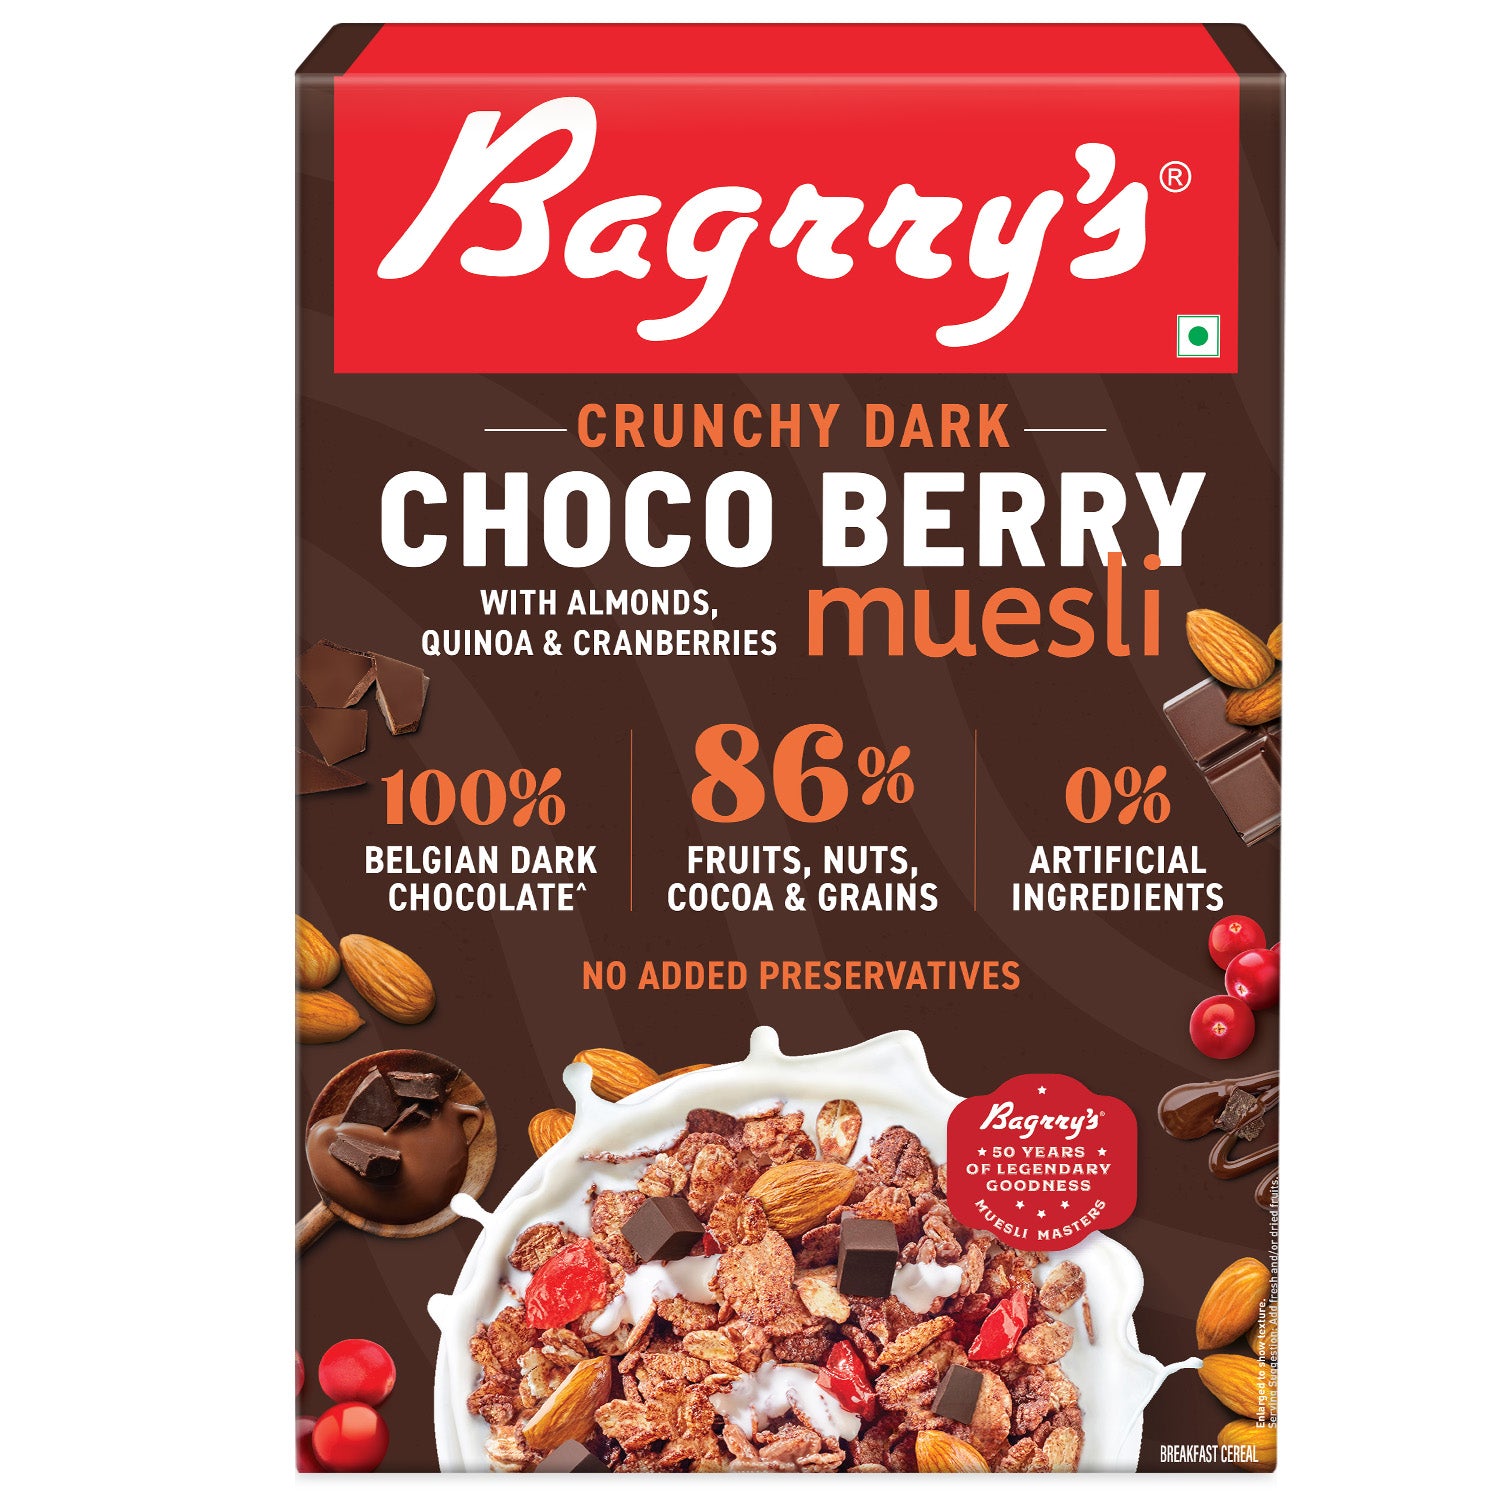 Choco Berry Muesli - Chocolate, Cranberries, Quinoa